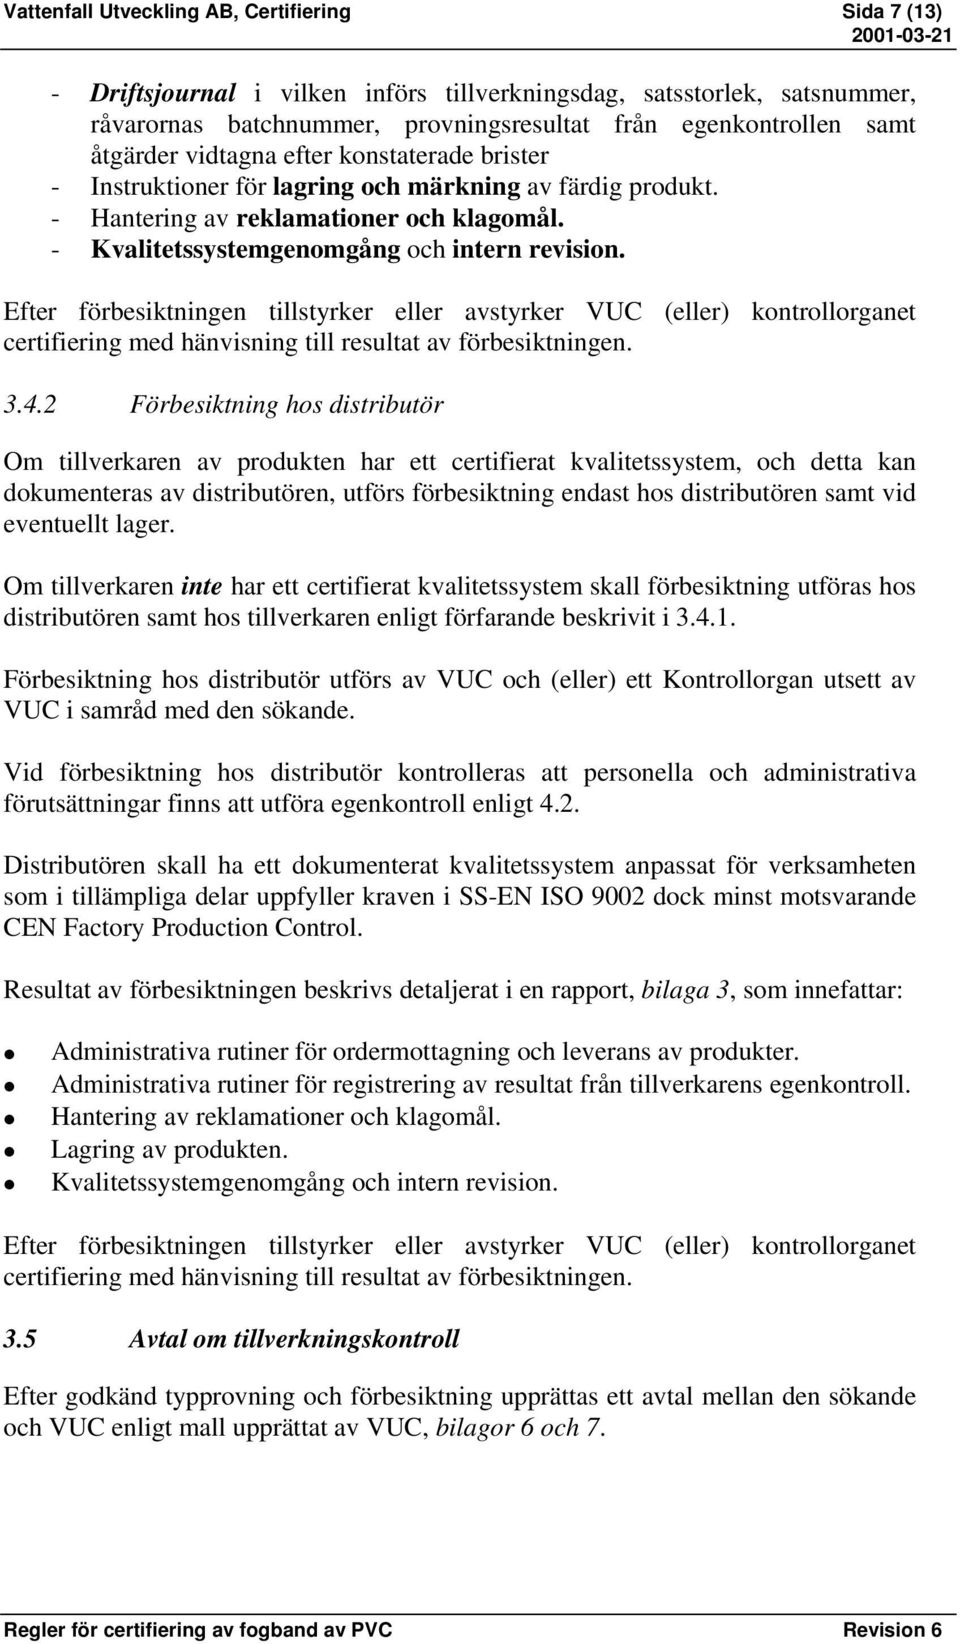 Efter förbesiktningen tillstyrker eller avstyrker VUC (eller) kontrollorganet certifiering med hänvisning till resultat av förbesiktningen. 3.4.